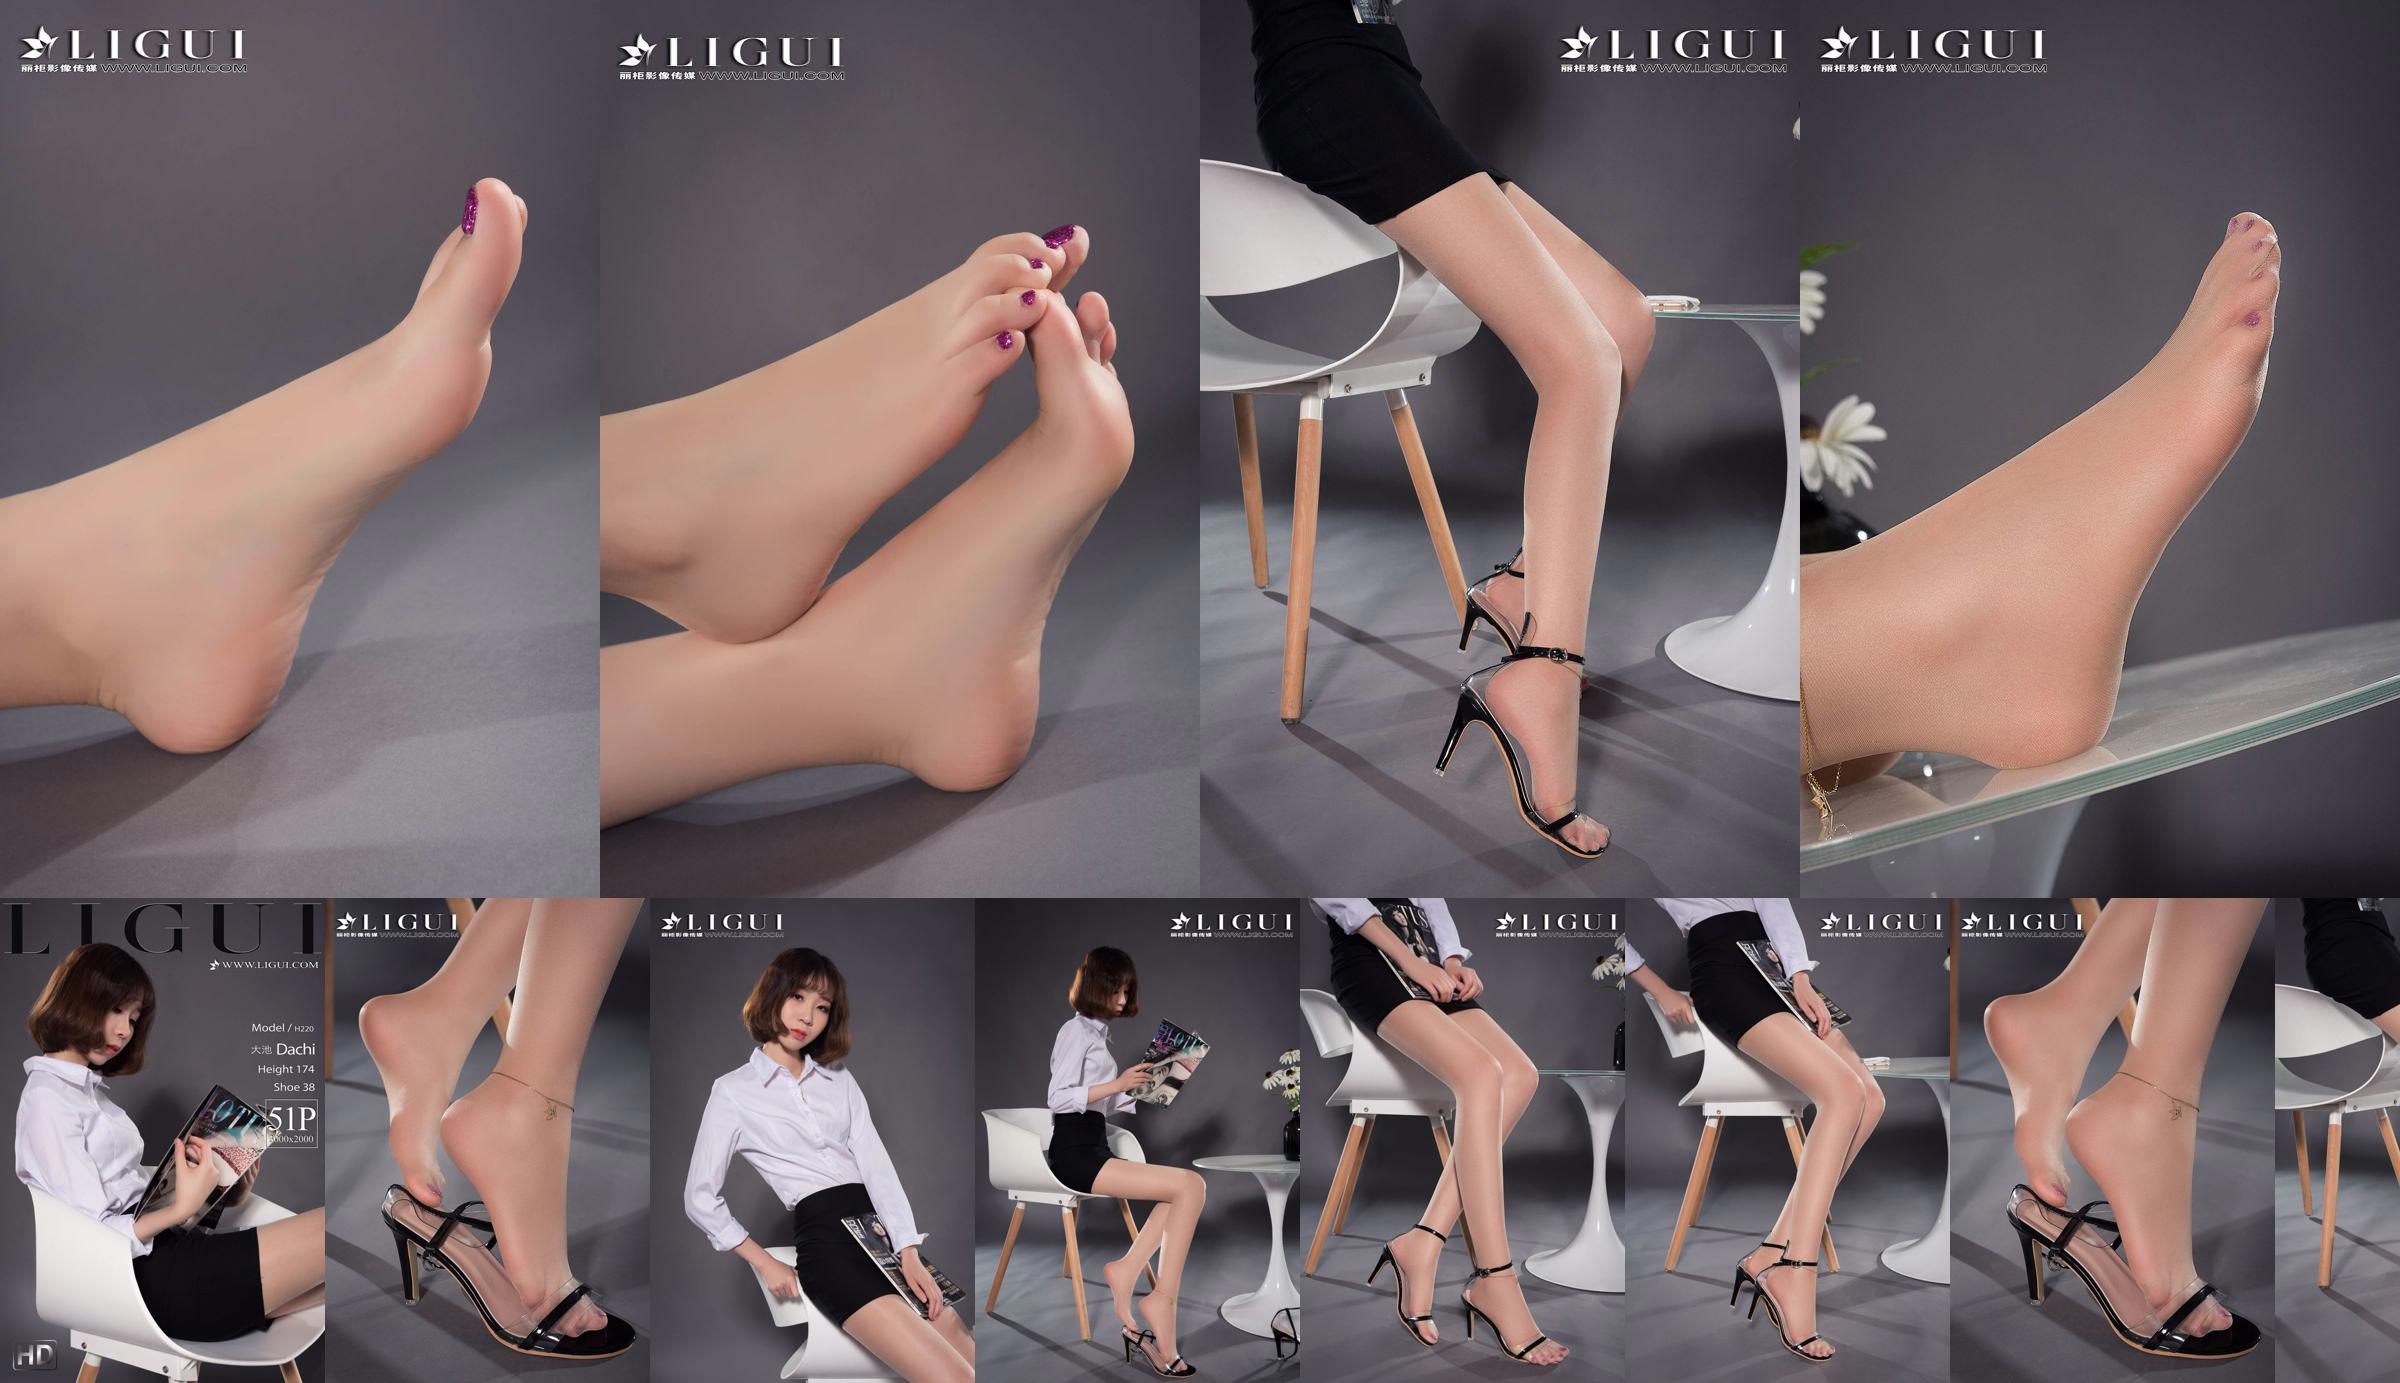 Người mẫu chân Oike "Heo với giày cao gót CV" [Ligui Ligui] Vẻ đẹp Internet No.25a9da Trang 3